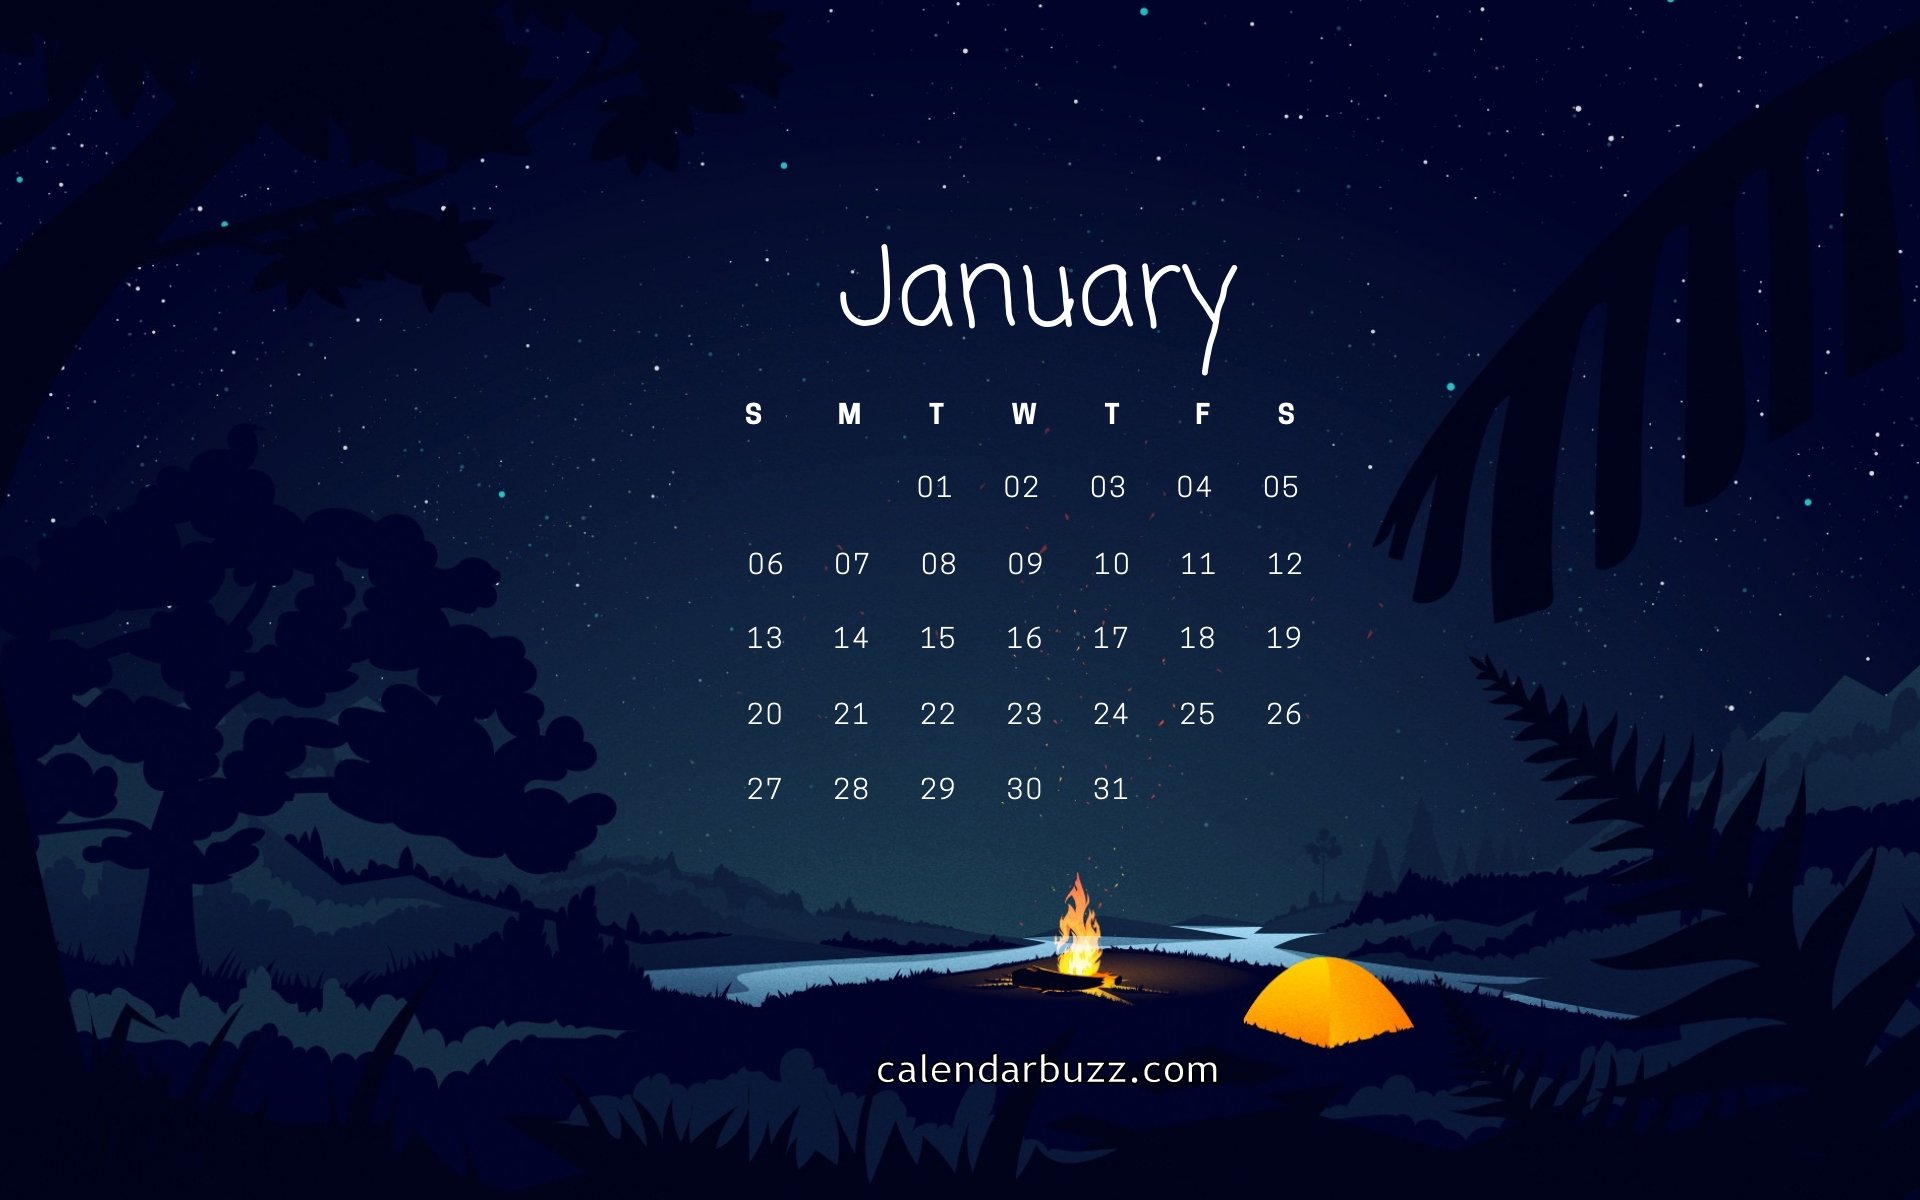  January 2019 Calendar Wallpapers Download CalendarBuzz 1920x1200